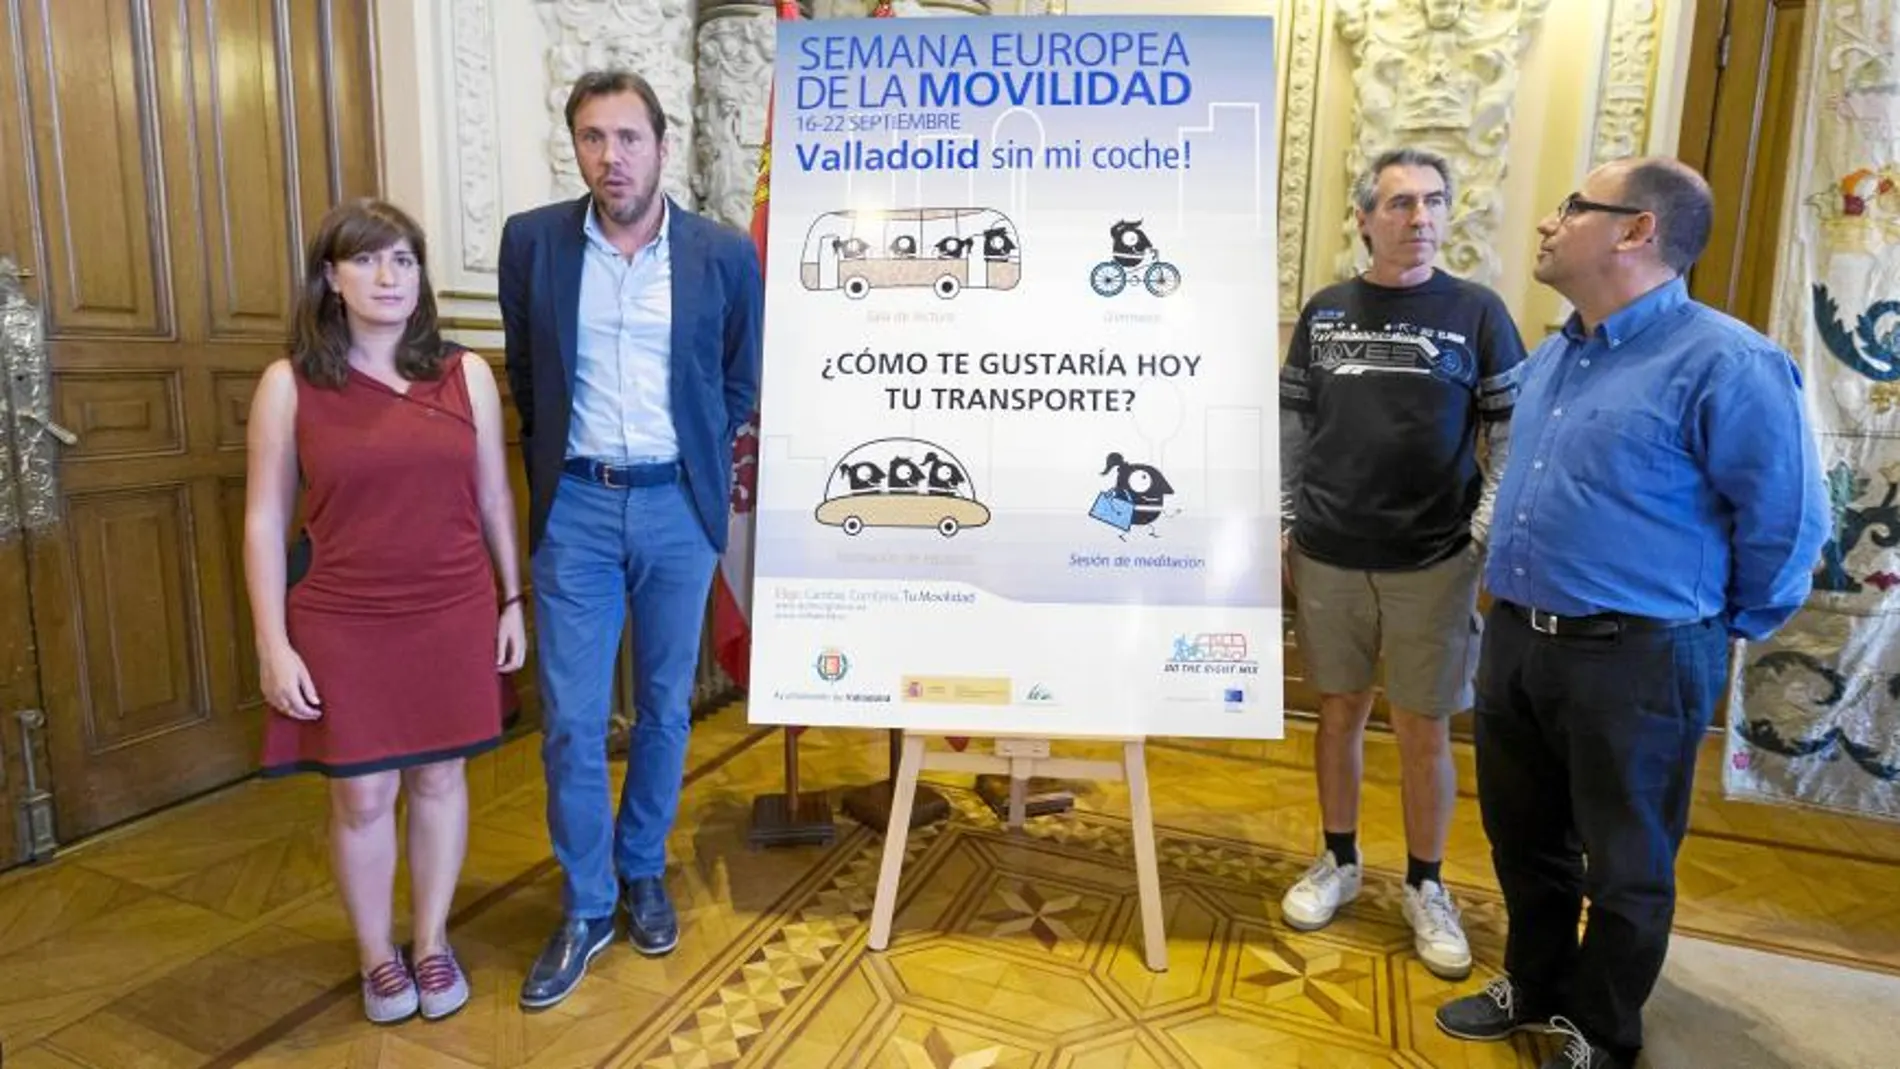 María Sánchez, Óscar Puente, Demetrio Saster y Luis Vélez durante la presentación de los actos de la Semana de la Movilidad